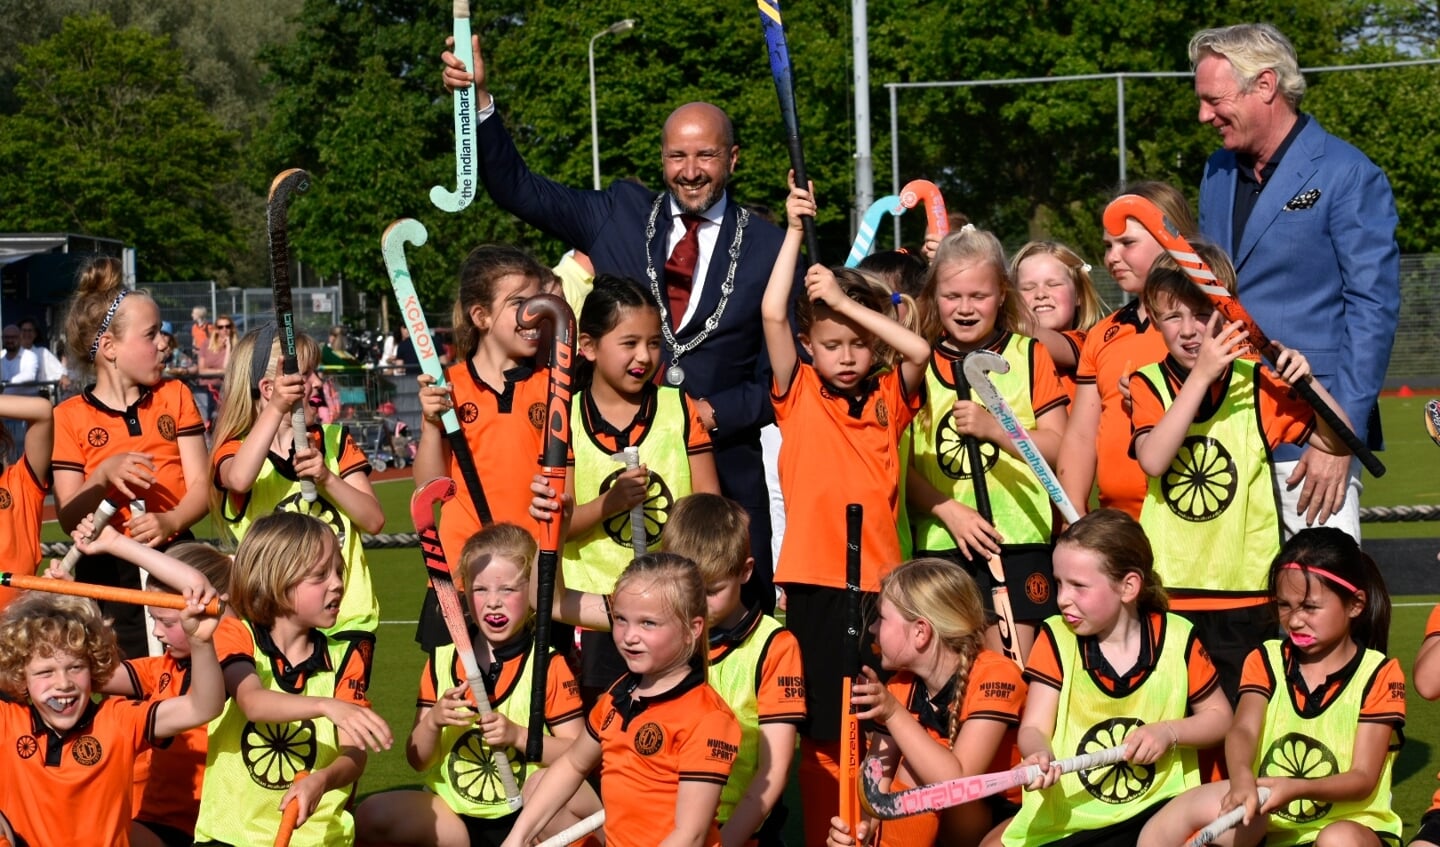 De Arnhemse burgemeester Ahmed Marcouch heeft zaterdag 14 mei officieel het clubhuis van hockeyclub HCM Arnhem aan de Drielsedijk in Arnhem geopend.  